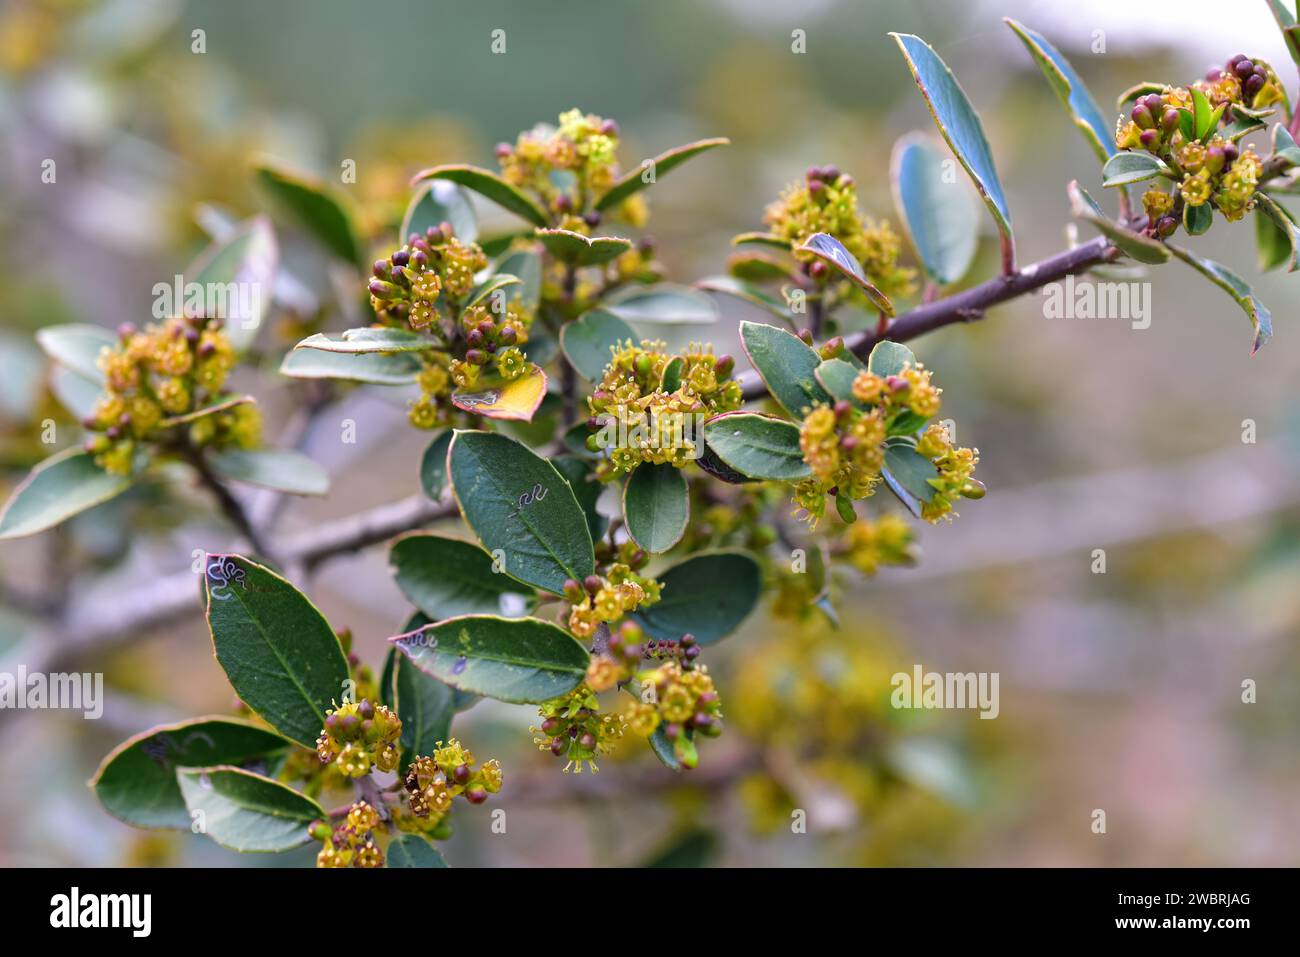 Il biancospino mediterraneo (Rhamnus alaternus) è un arbusto sempreverde originario del bacino del Mediterraneo. Dettagli fiori e foglie. Questa foto è stata scattata a Los Angeles Foto Stock